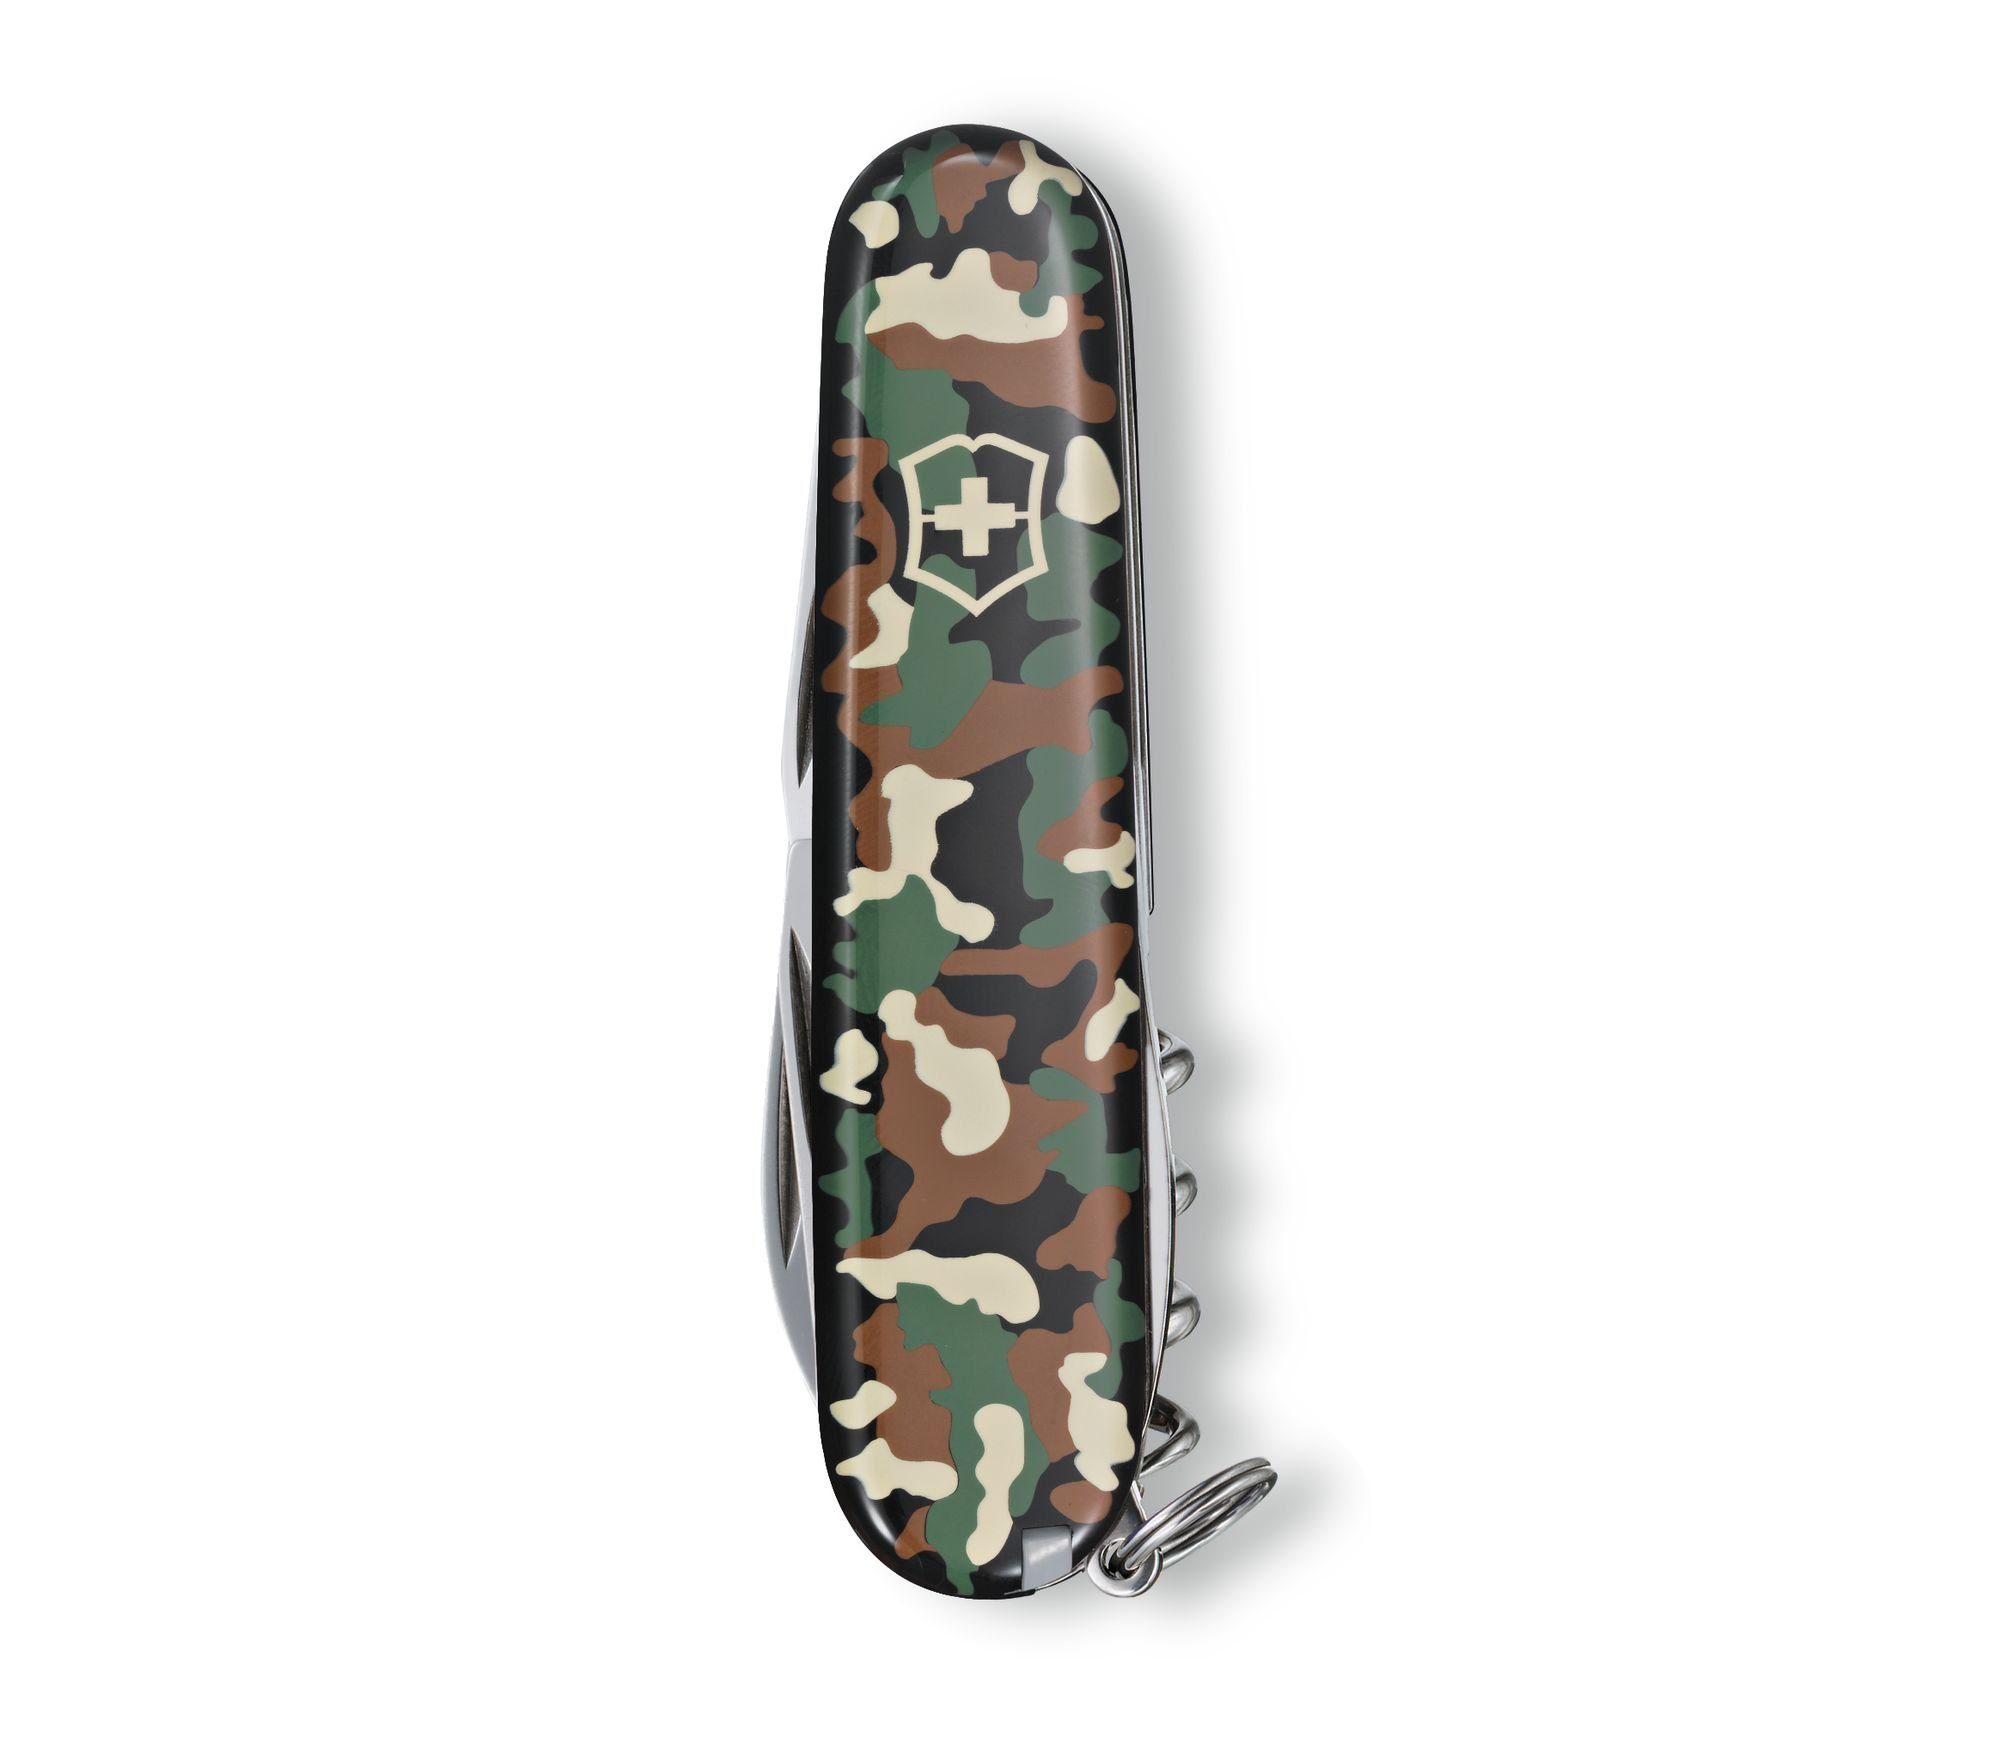 Victorinox Taschenmesser mittleres Offiziersmesser Spartan Taschenmesser 1.3603.94 camouflage